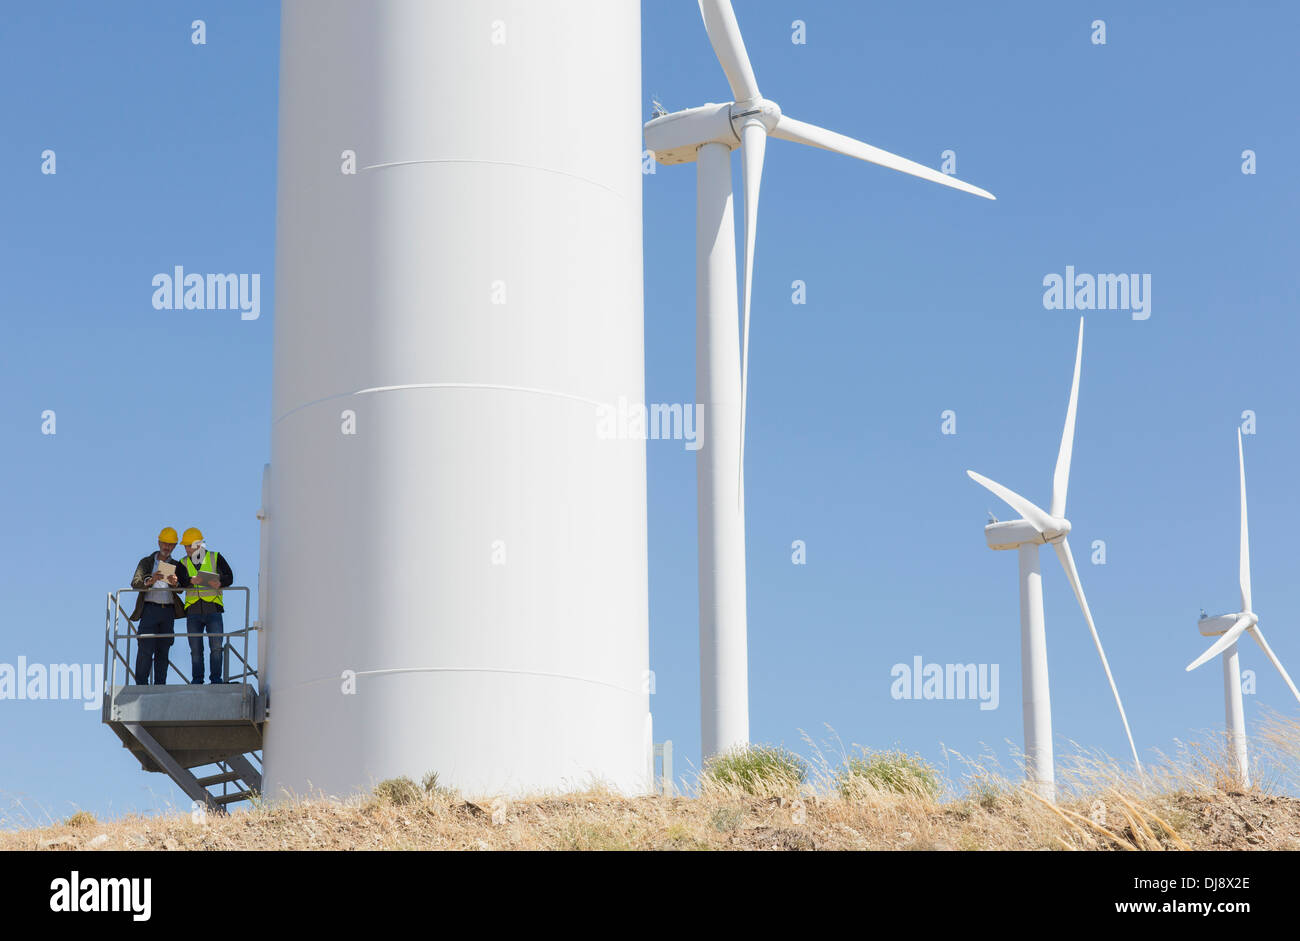 Workers talking on wind turbine in rural landscape Stock Photo